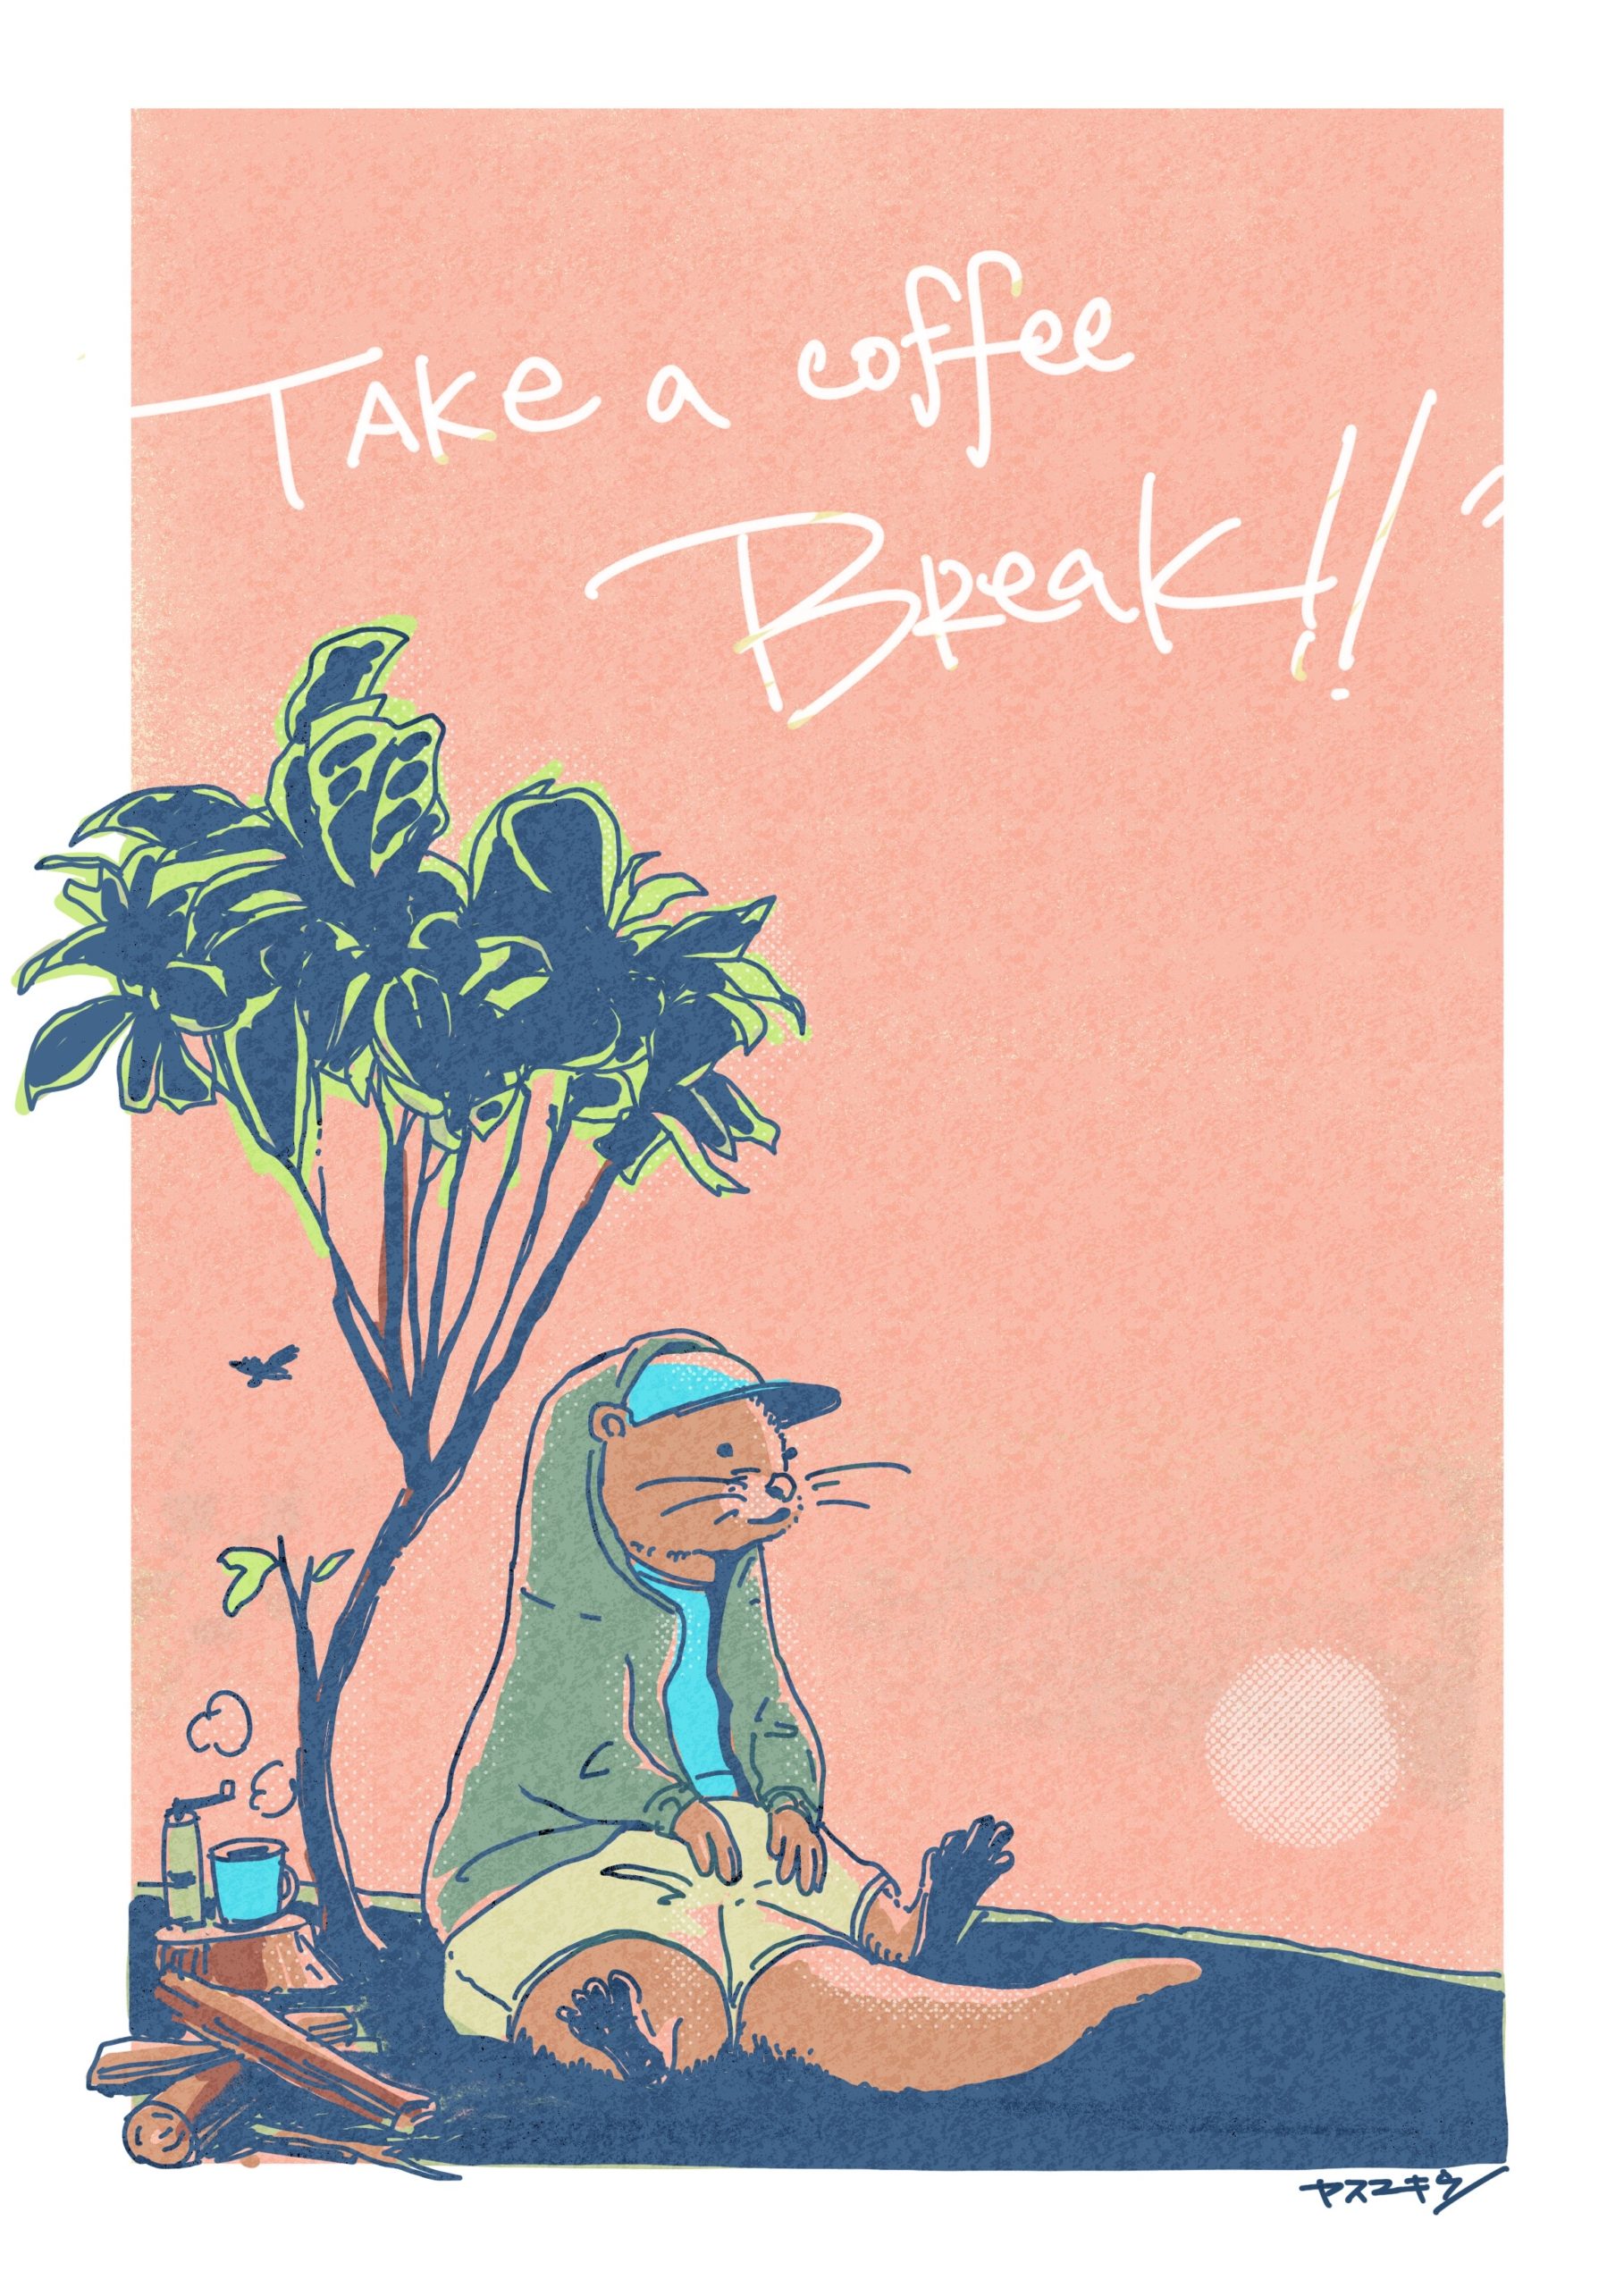 TAKE A COFFEE BREAK -TREE